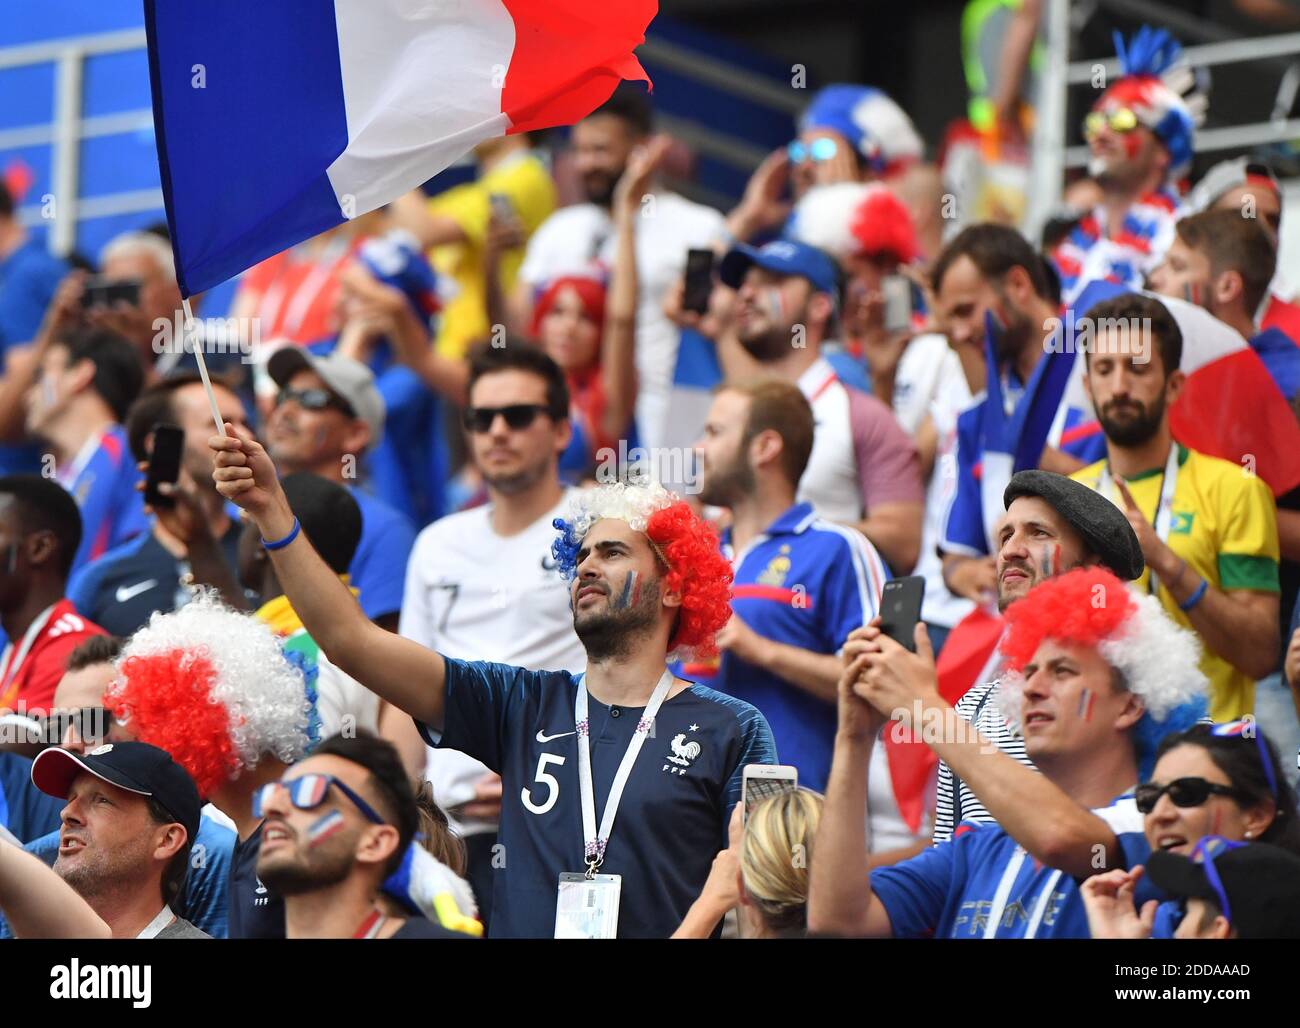 Les fans français lors de la coupe du monde de la FIFA Russie France contre Danemark au stade Luznhiki, Moscou, Russie, le 26 juin 2018. Photo de Christian Liewig/ABACAPRESS.COM Banque D'Images